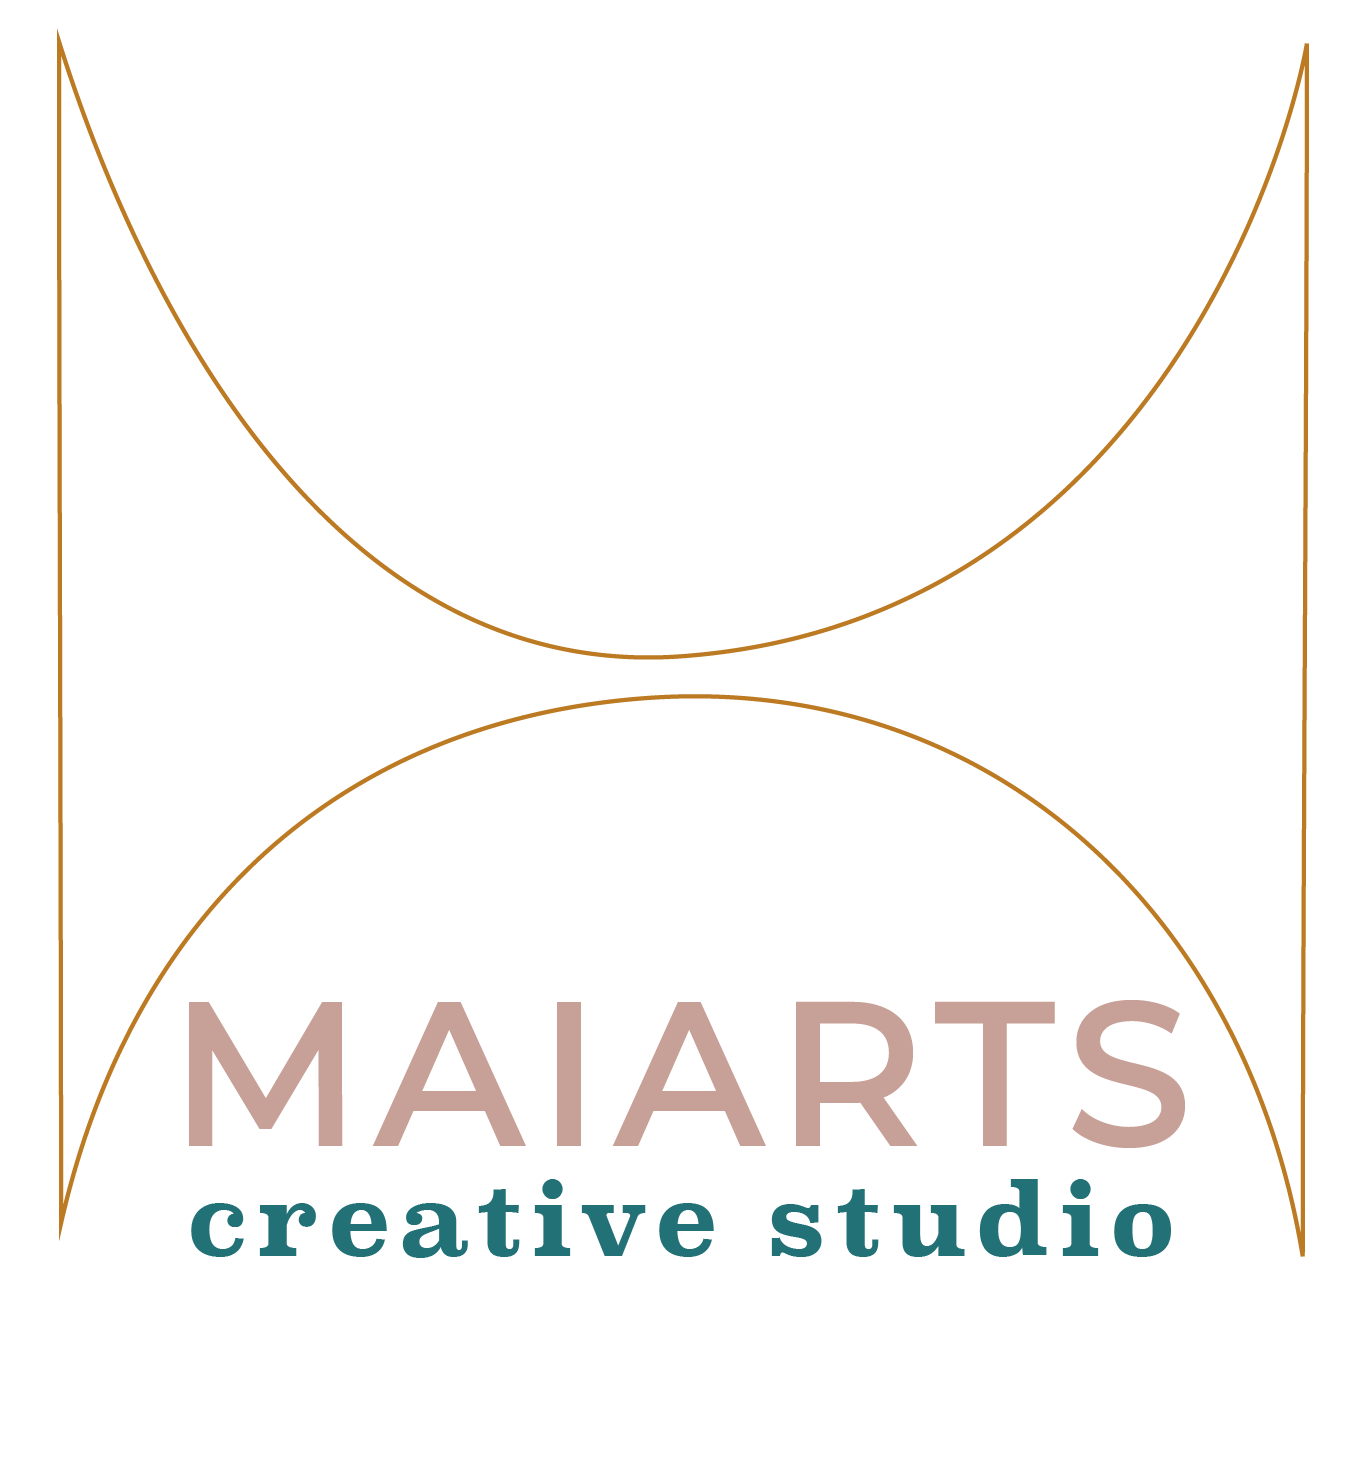 Maiarts Creative Studio